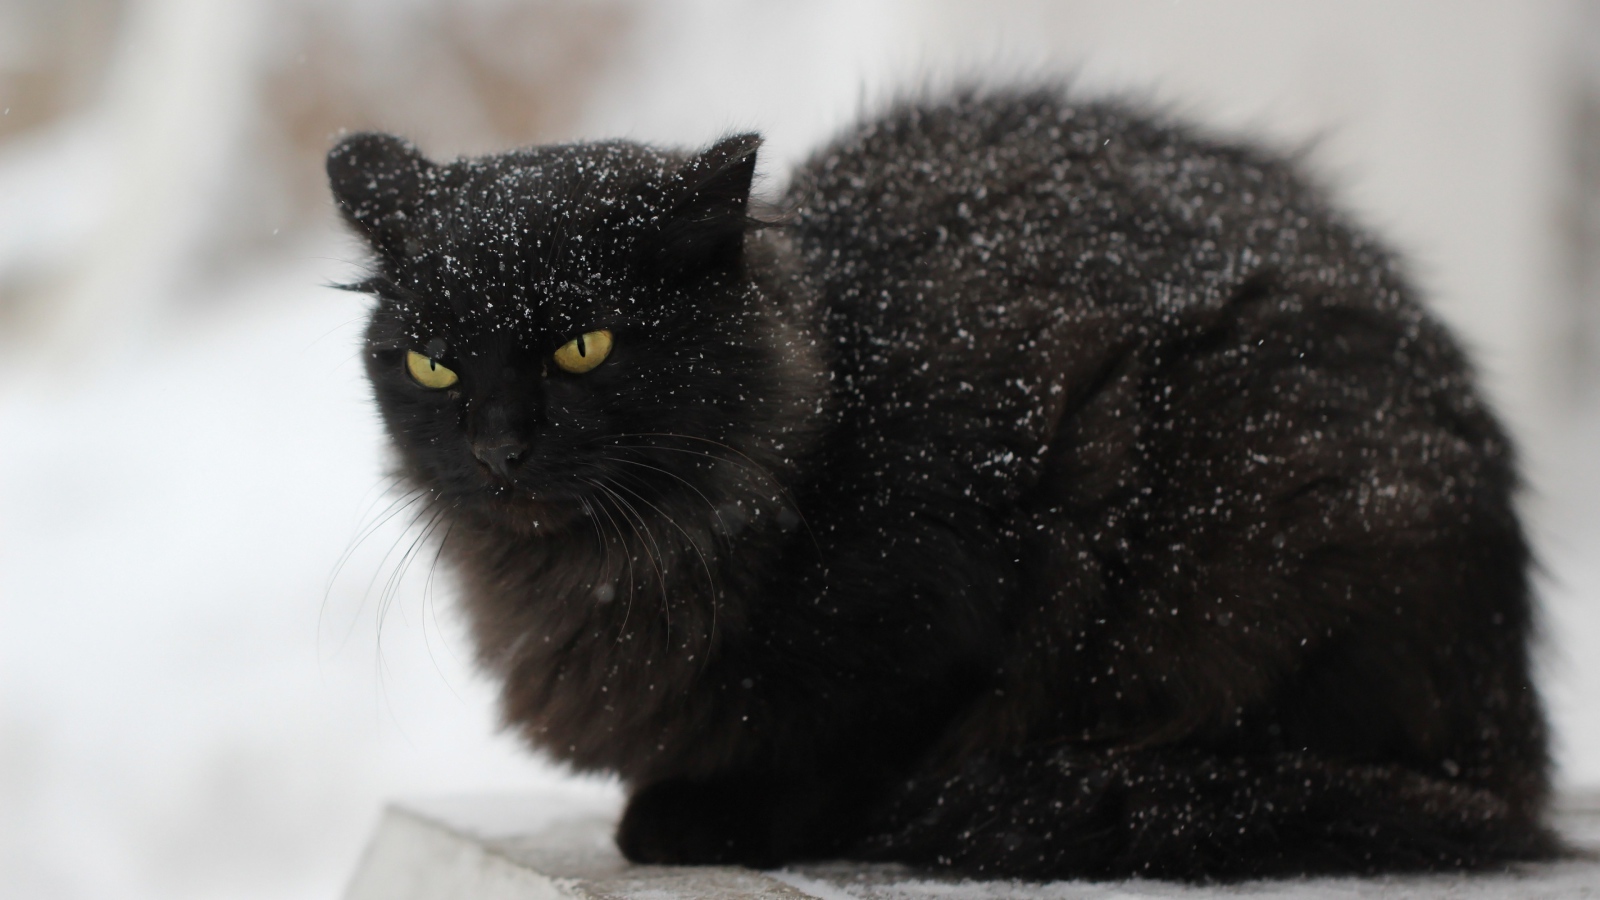 Недовольный черный кот в снегу на улице